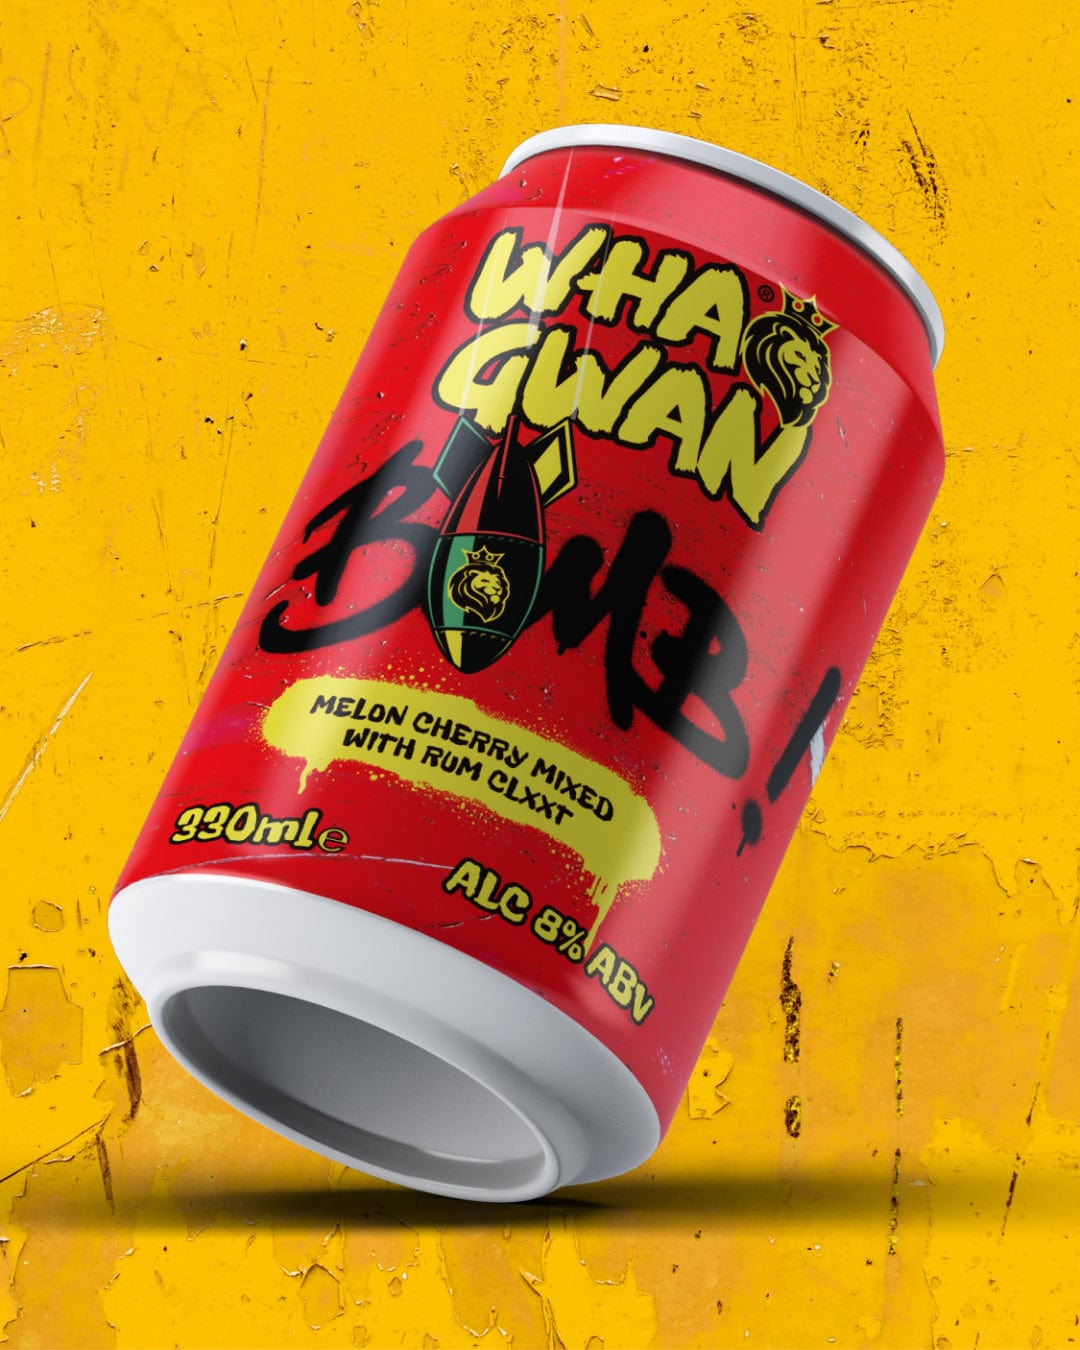 Wha Gwan Bomb Premixed Drink Multipack, 12 x 330 ml